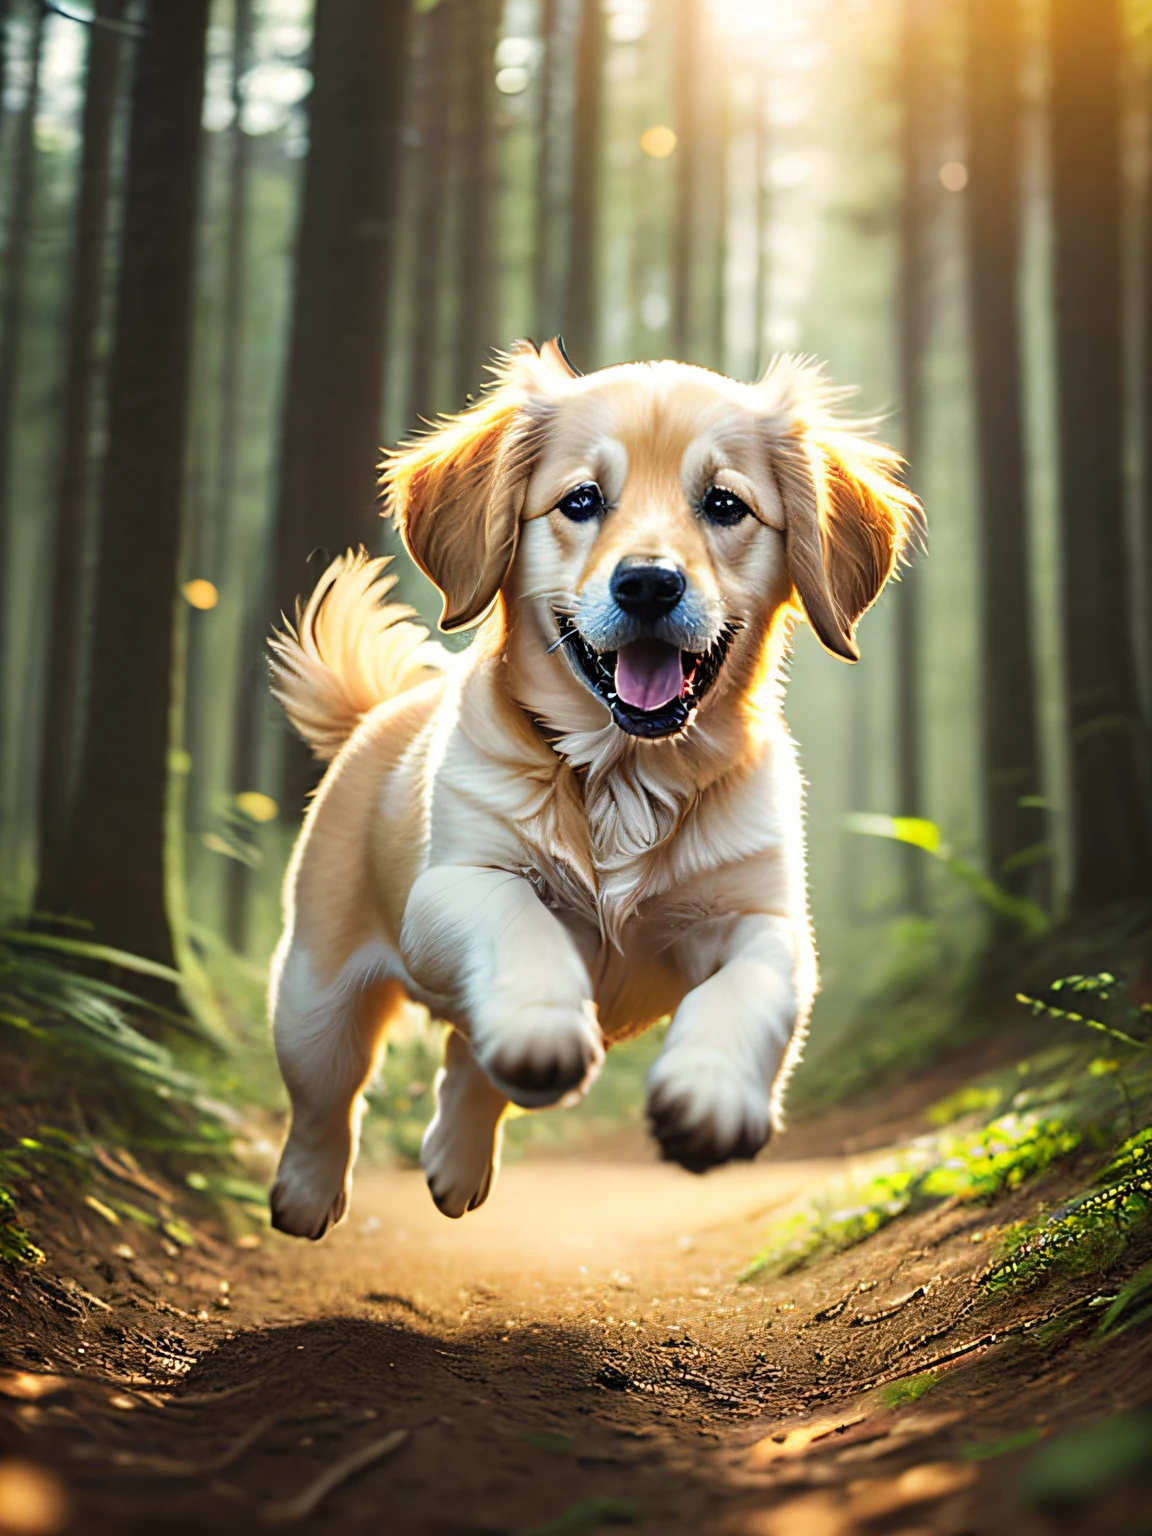 foto de primer plano de un cachorro de Golden Retriever saltando muy lindo en el bosque, luces volumétricas suaves (iluminar desde el fondo: 1.3), (cinemática: 1.2), detalles intrincados :